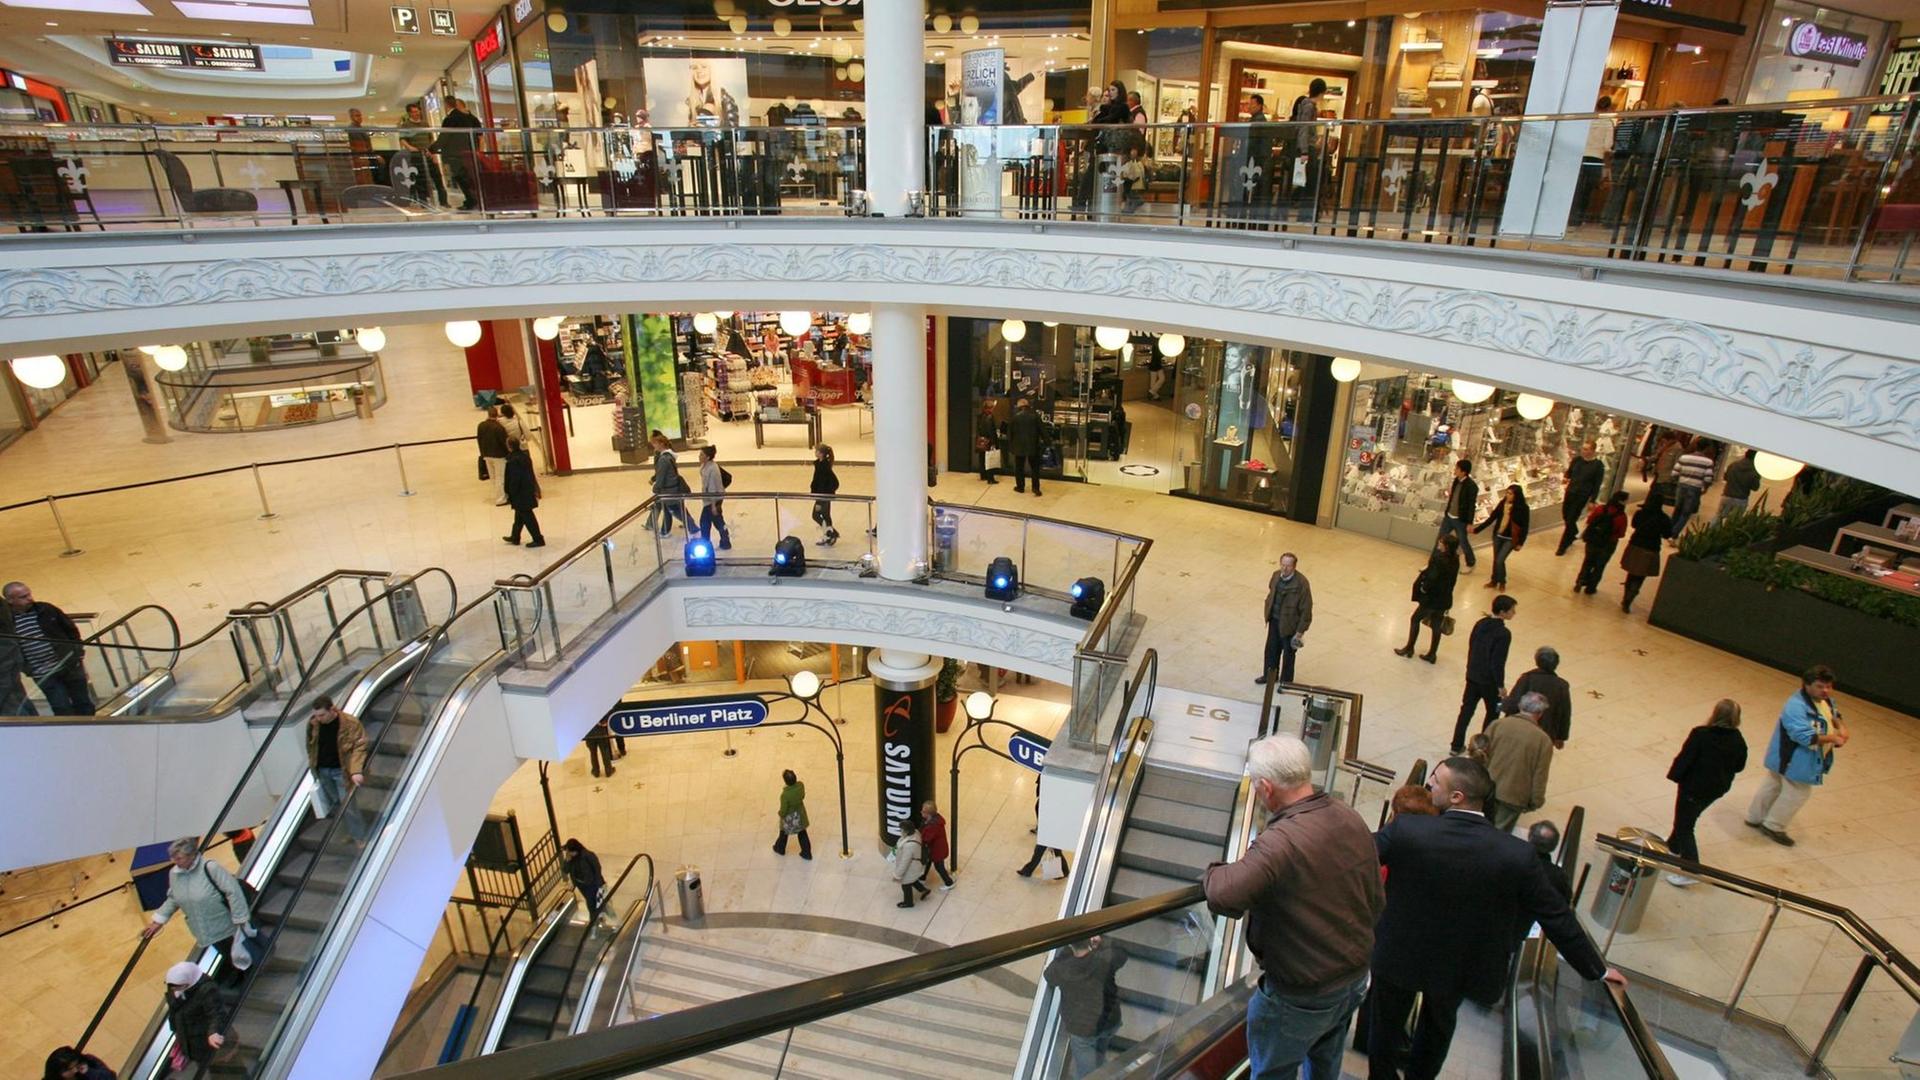 Kunden laufen durch das Einkaufszentrums "Limbecker Platz" in Essen. Auf insgesamt 70 000 Quadratmetern Fläche sind mehr als 200 Geschäfte und Restaurants untergebracht, wie der Hamburger Betreiber ECE erklärt.